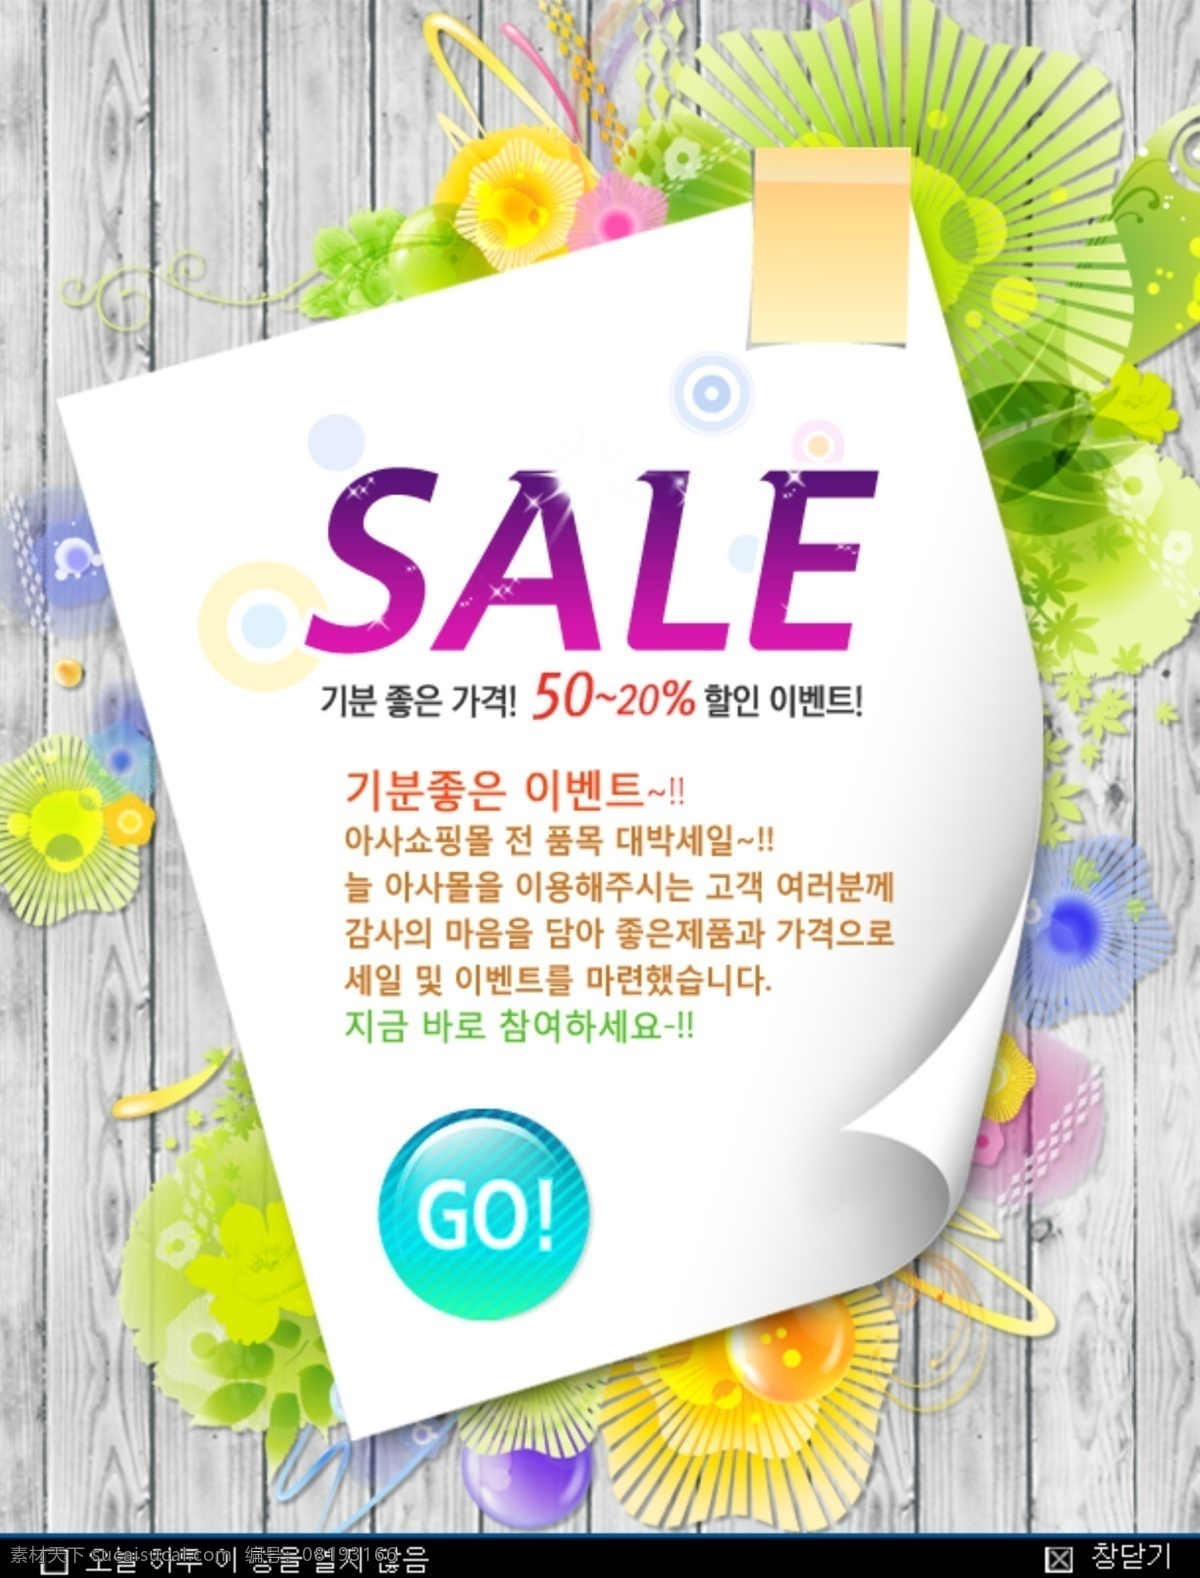 韩国 sale 广告 模板 go 花 木板 优惠 纸 psd源文件